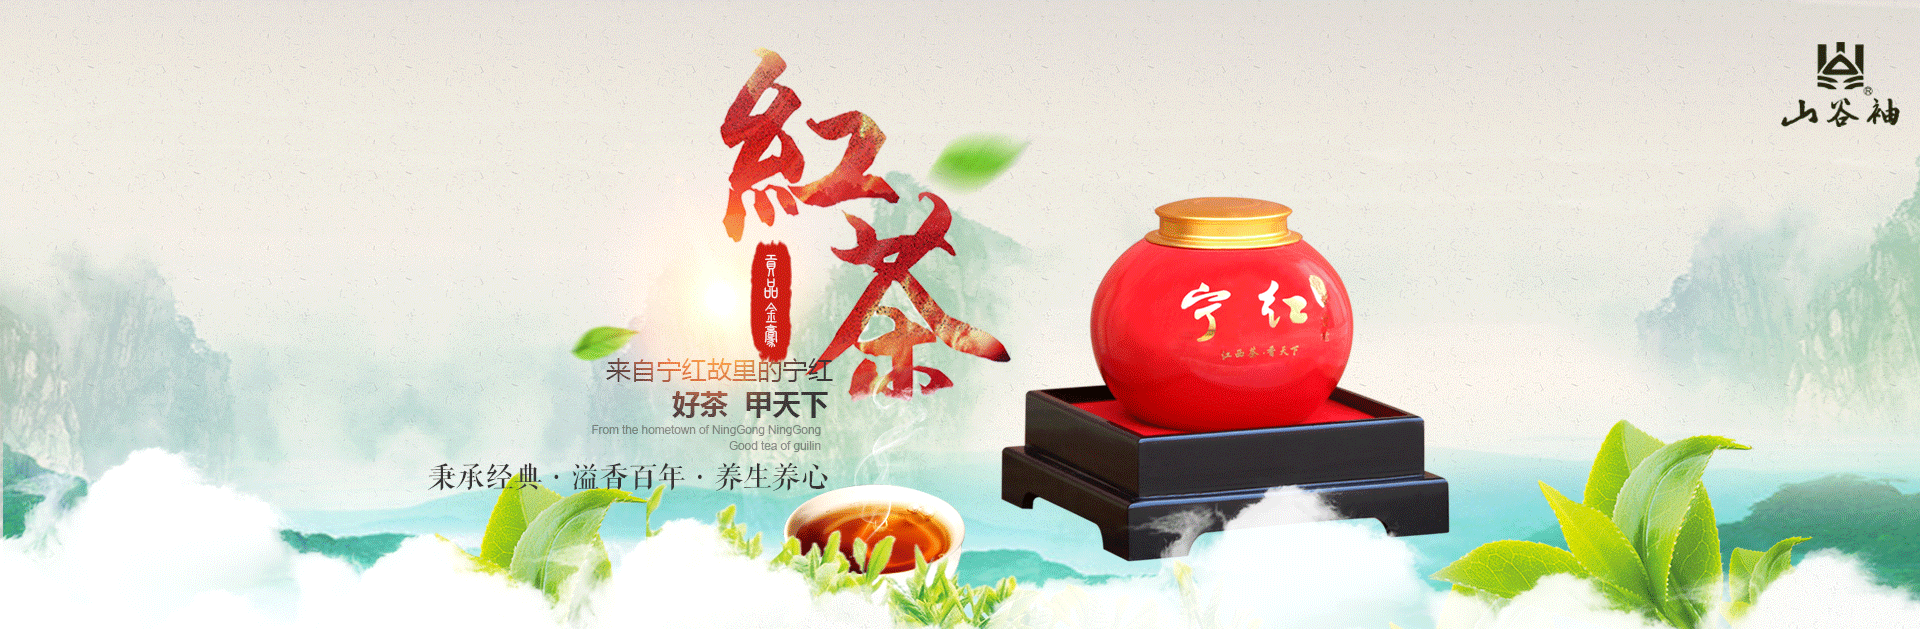 江西宁红茶系列